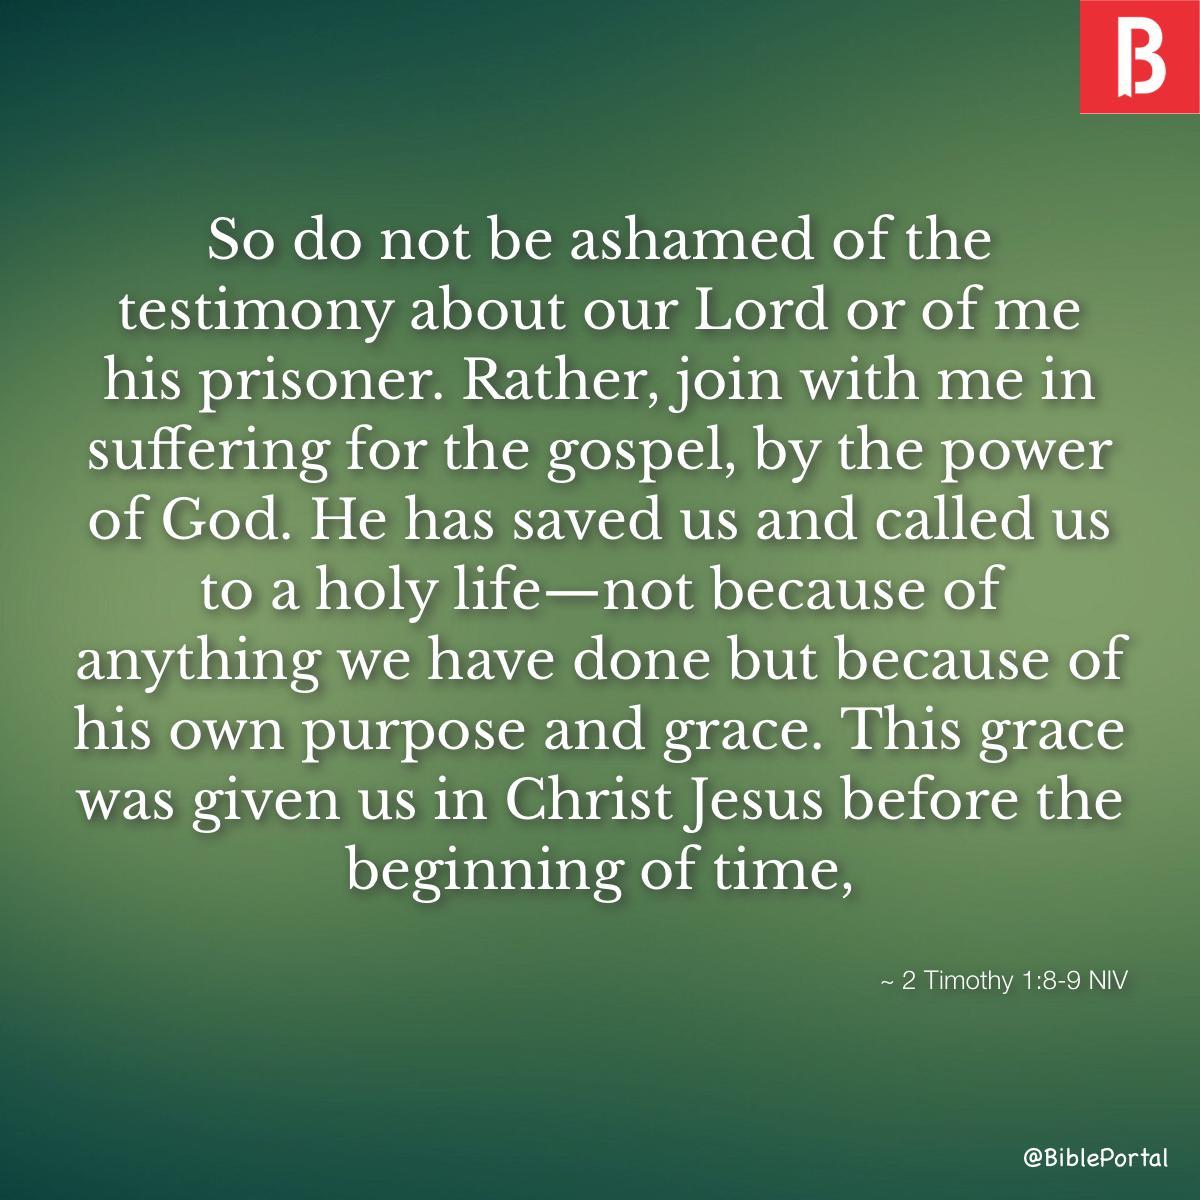 2 Timothy 1:8-9 NIV